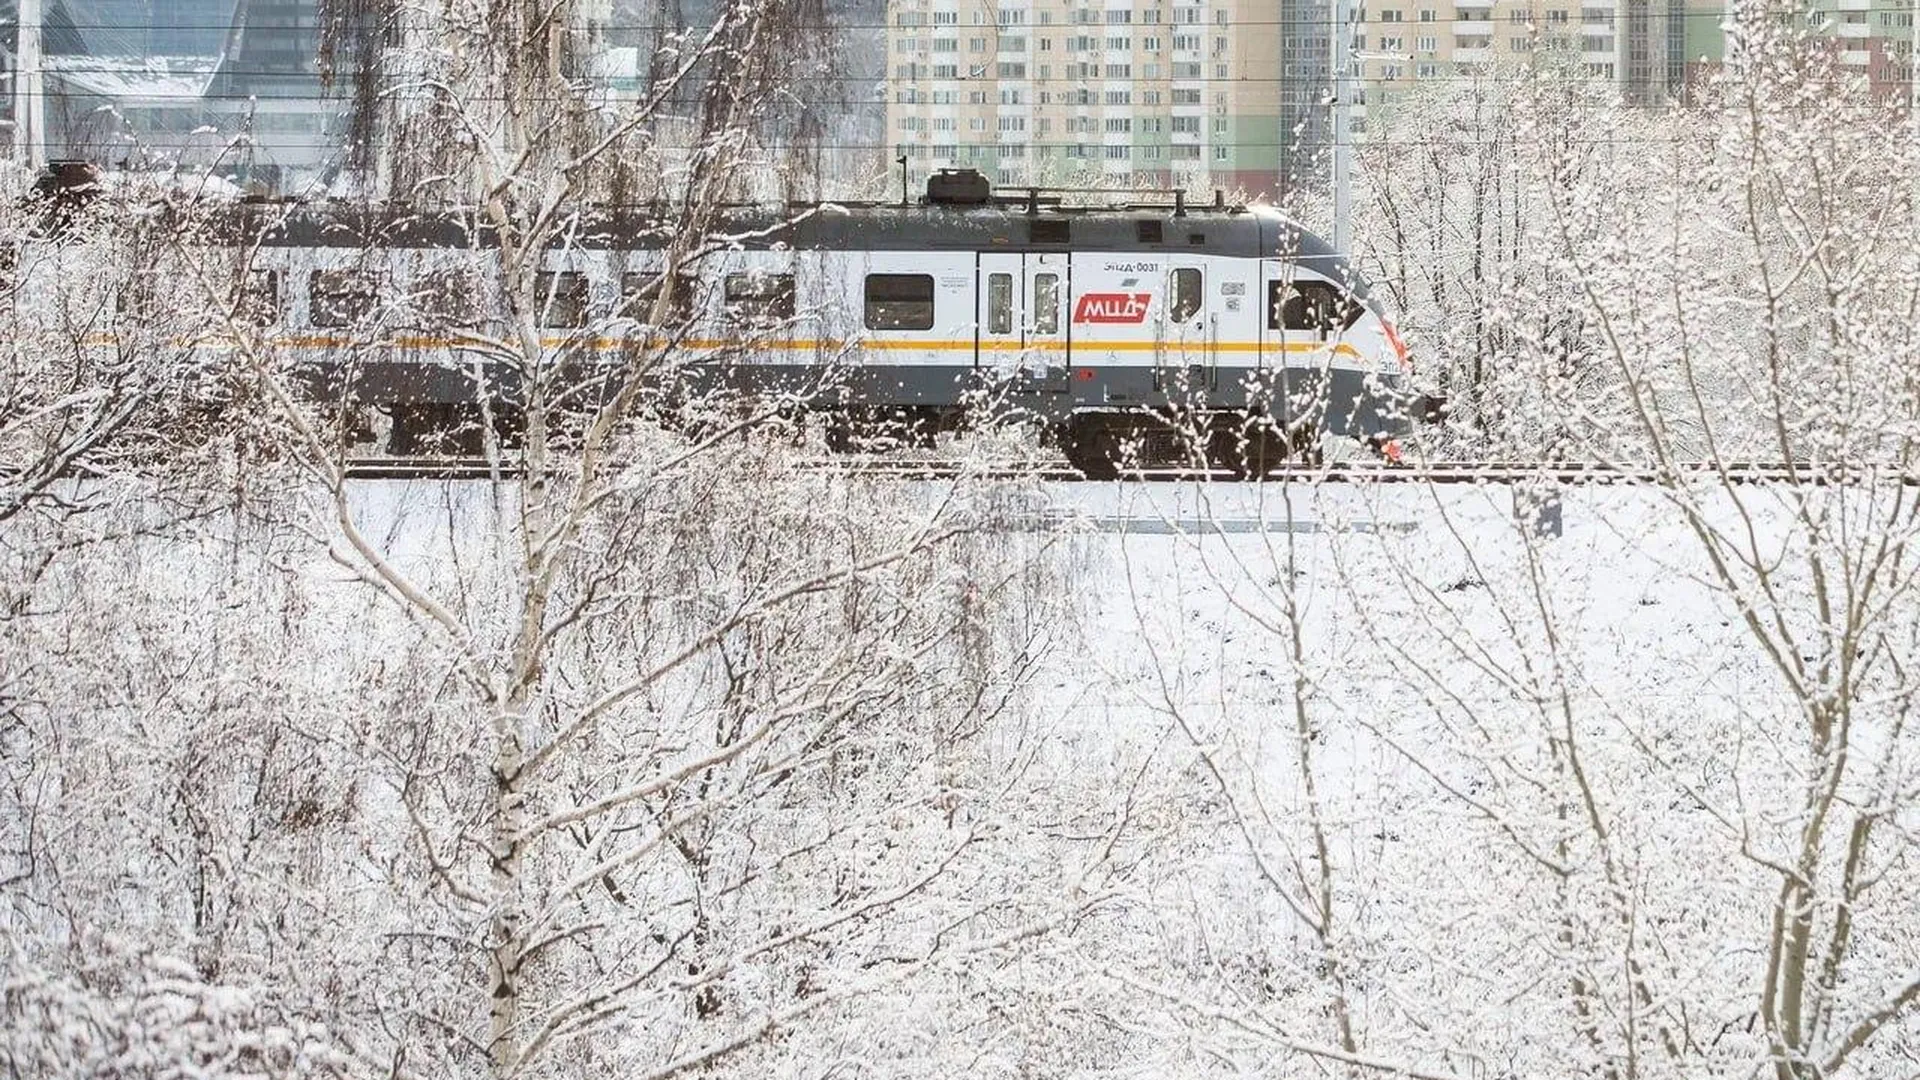 Бесплатно круглый год могут теперь провозить зимний спортинвентарь пассажиры любых поездов